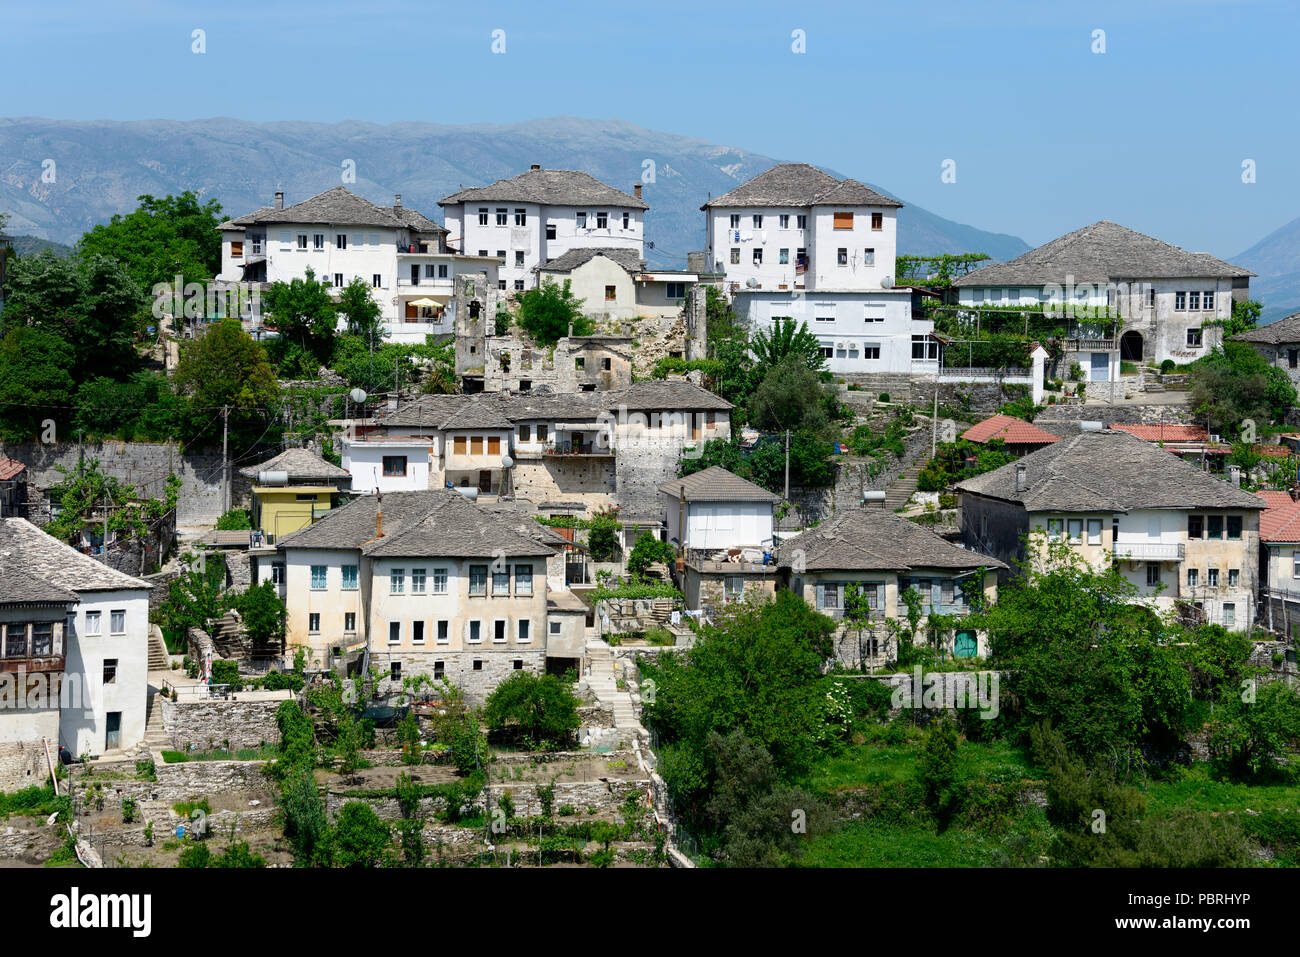 Typical stone buildings, town view, Gjirokastra, Albania Stock Photo